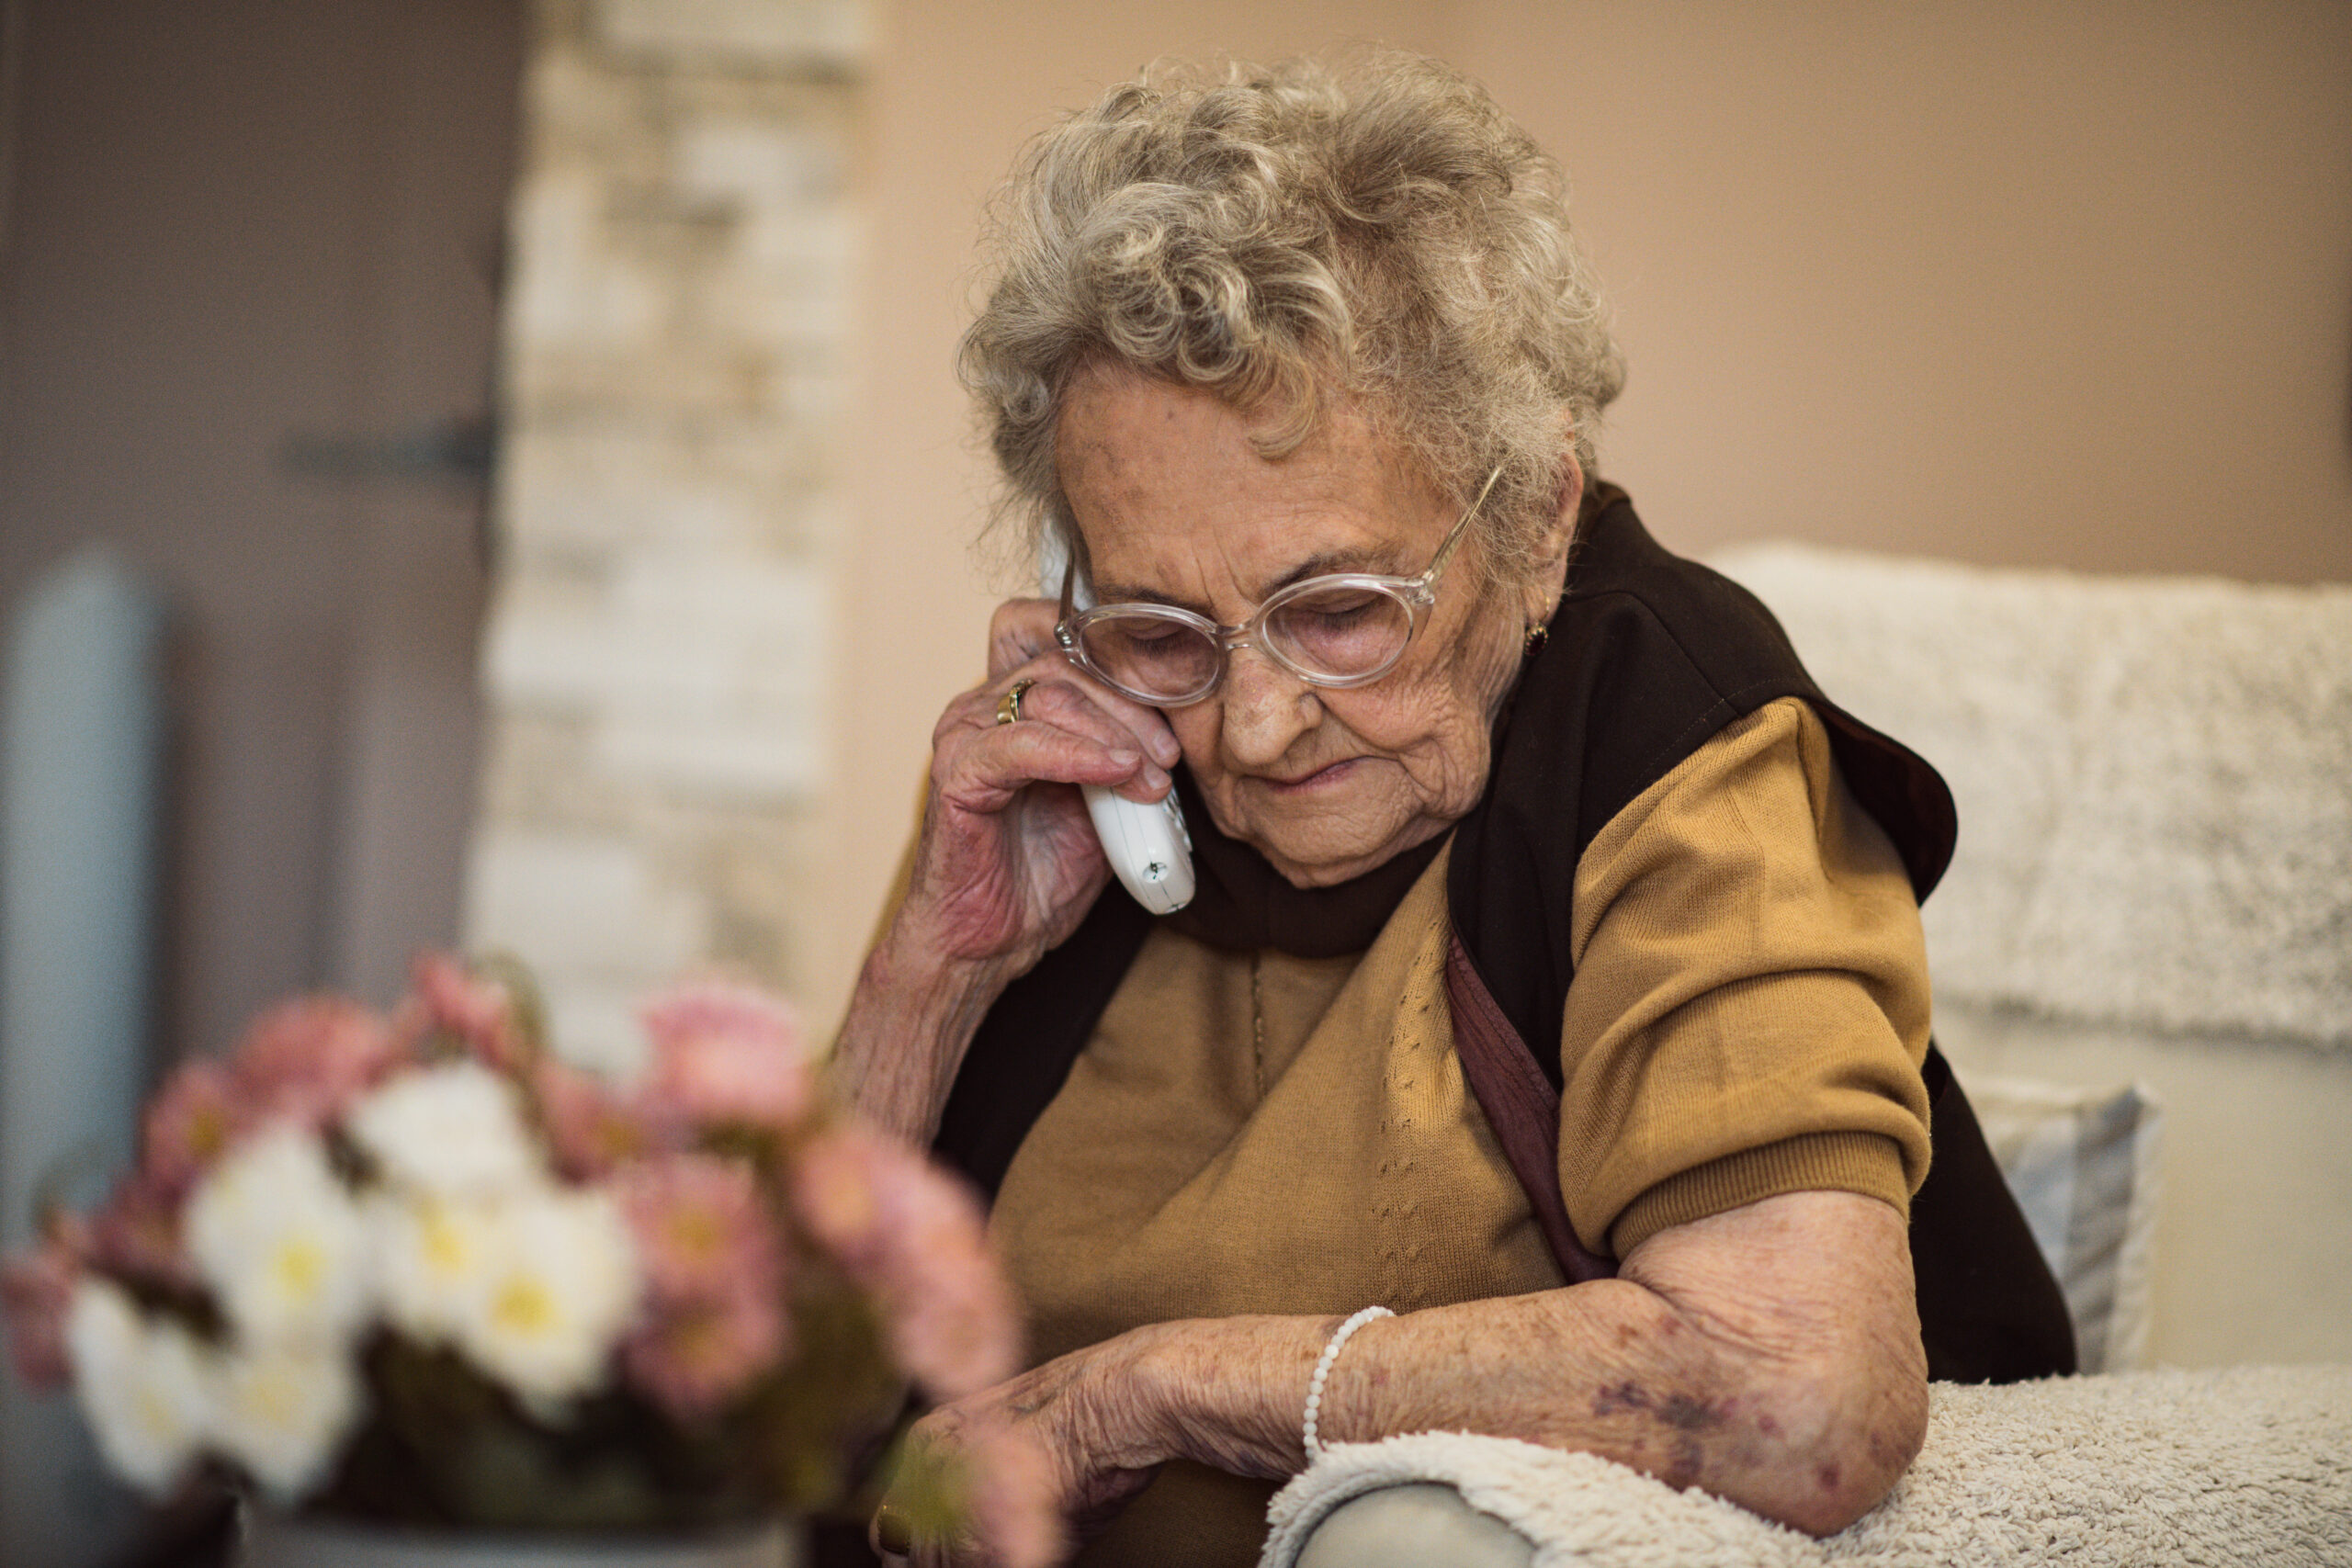 Older lady on a landline phone due BT compensation.